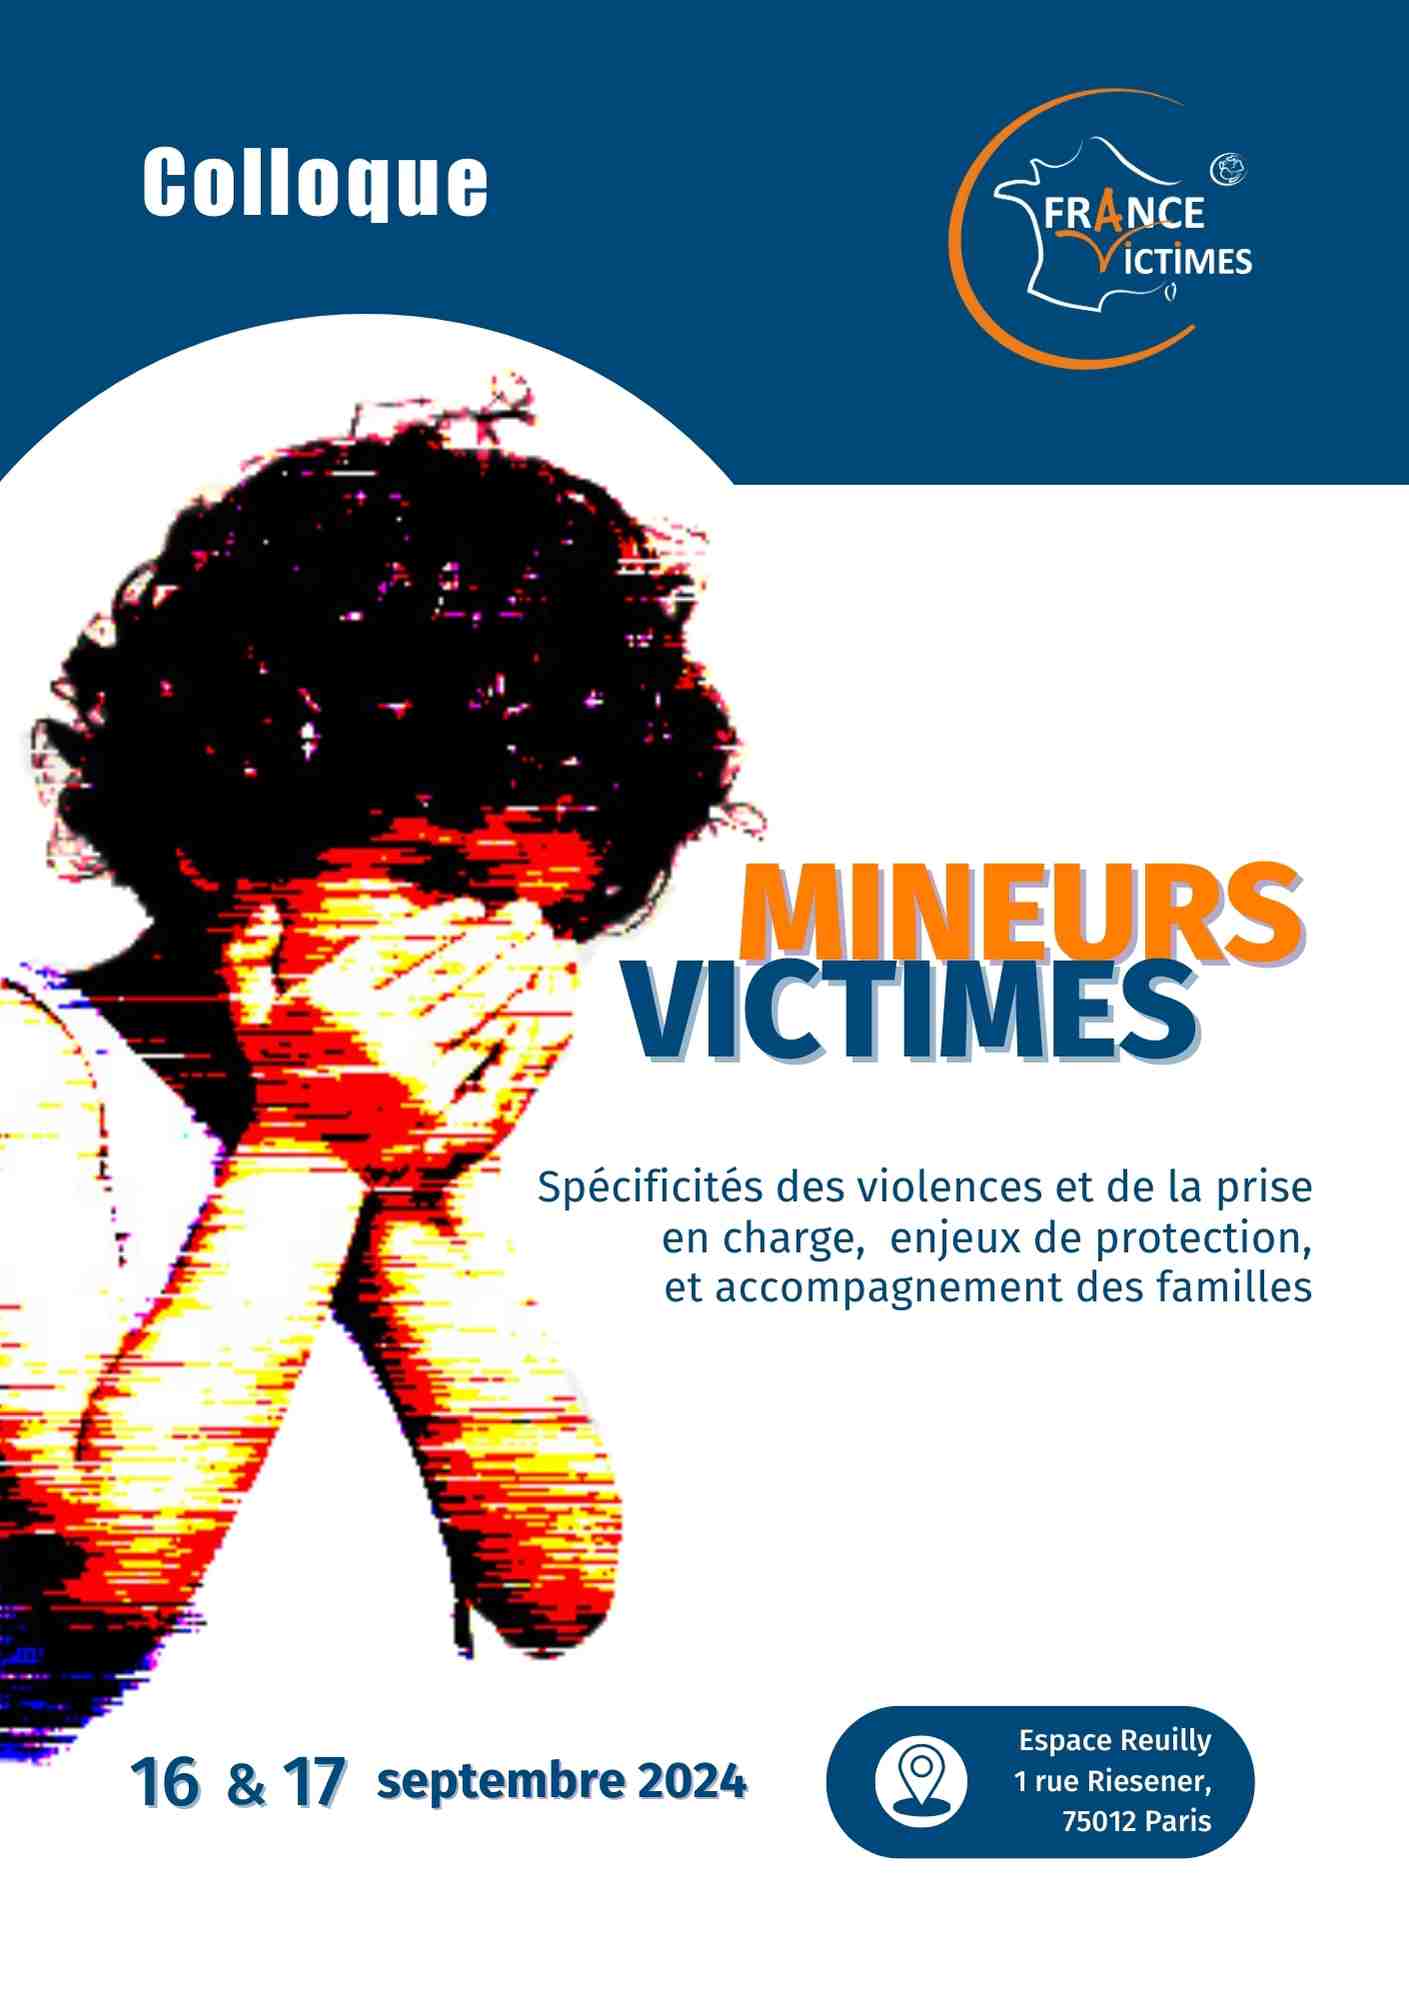 Colloque sur les Mineurs Victimes : Une Rencontre Incontournable pour la Protection de l'Enfance